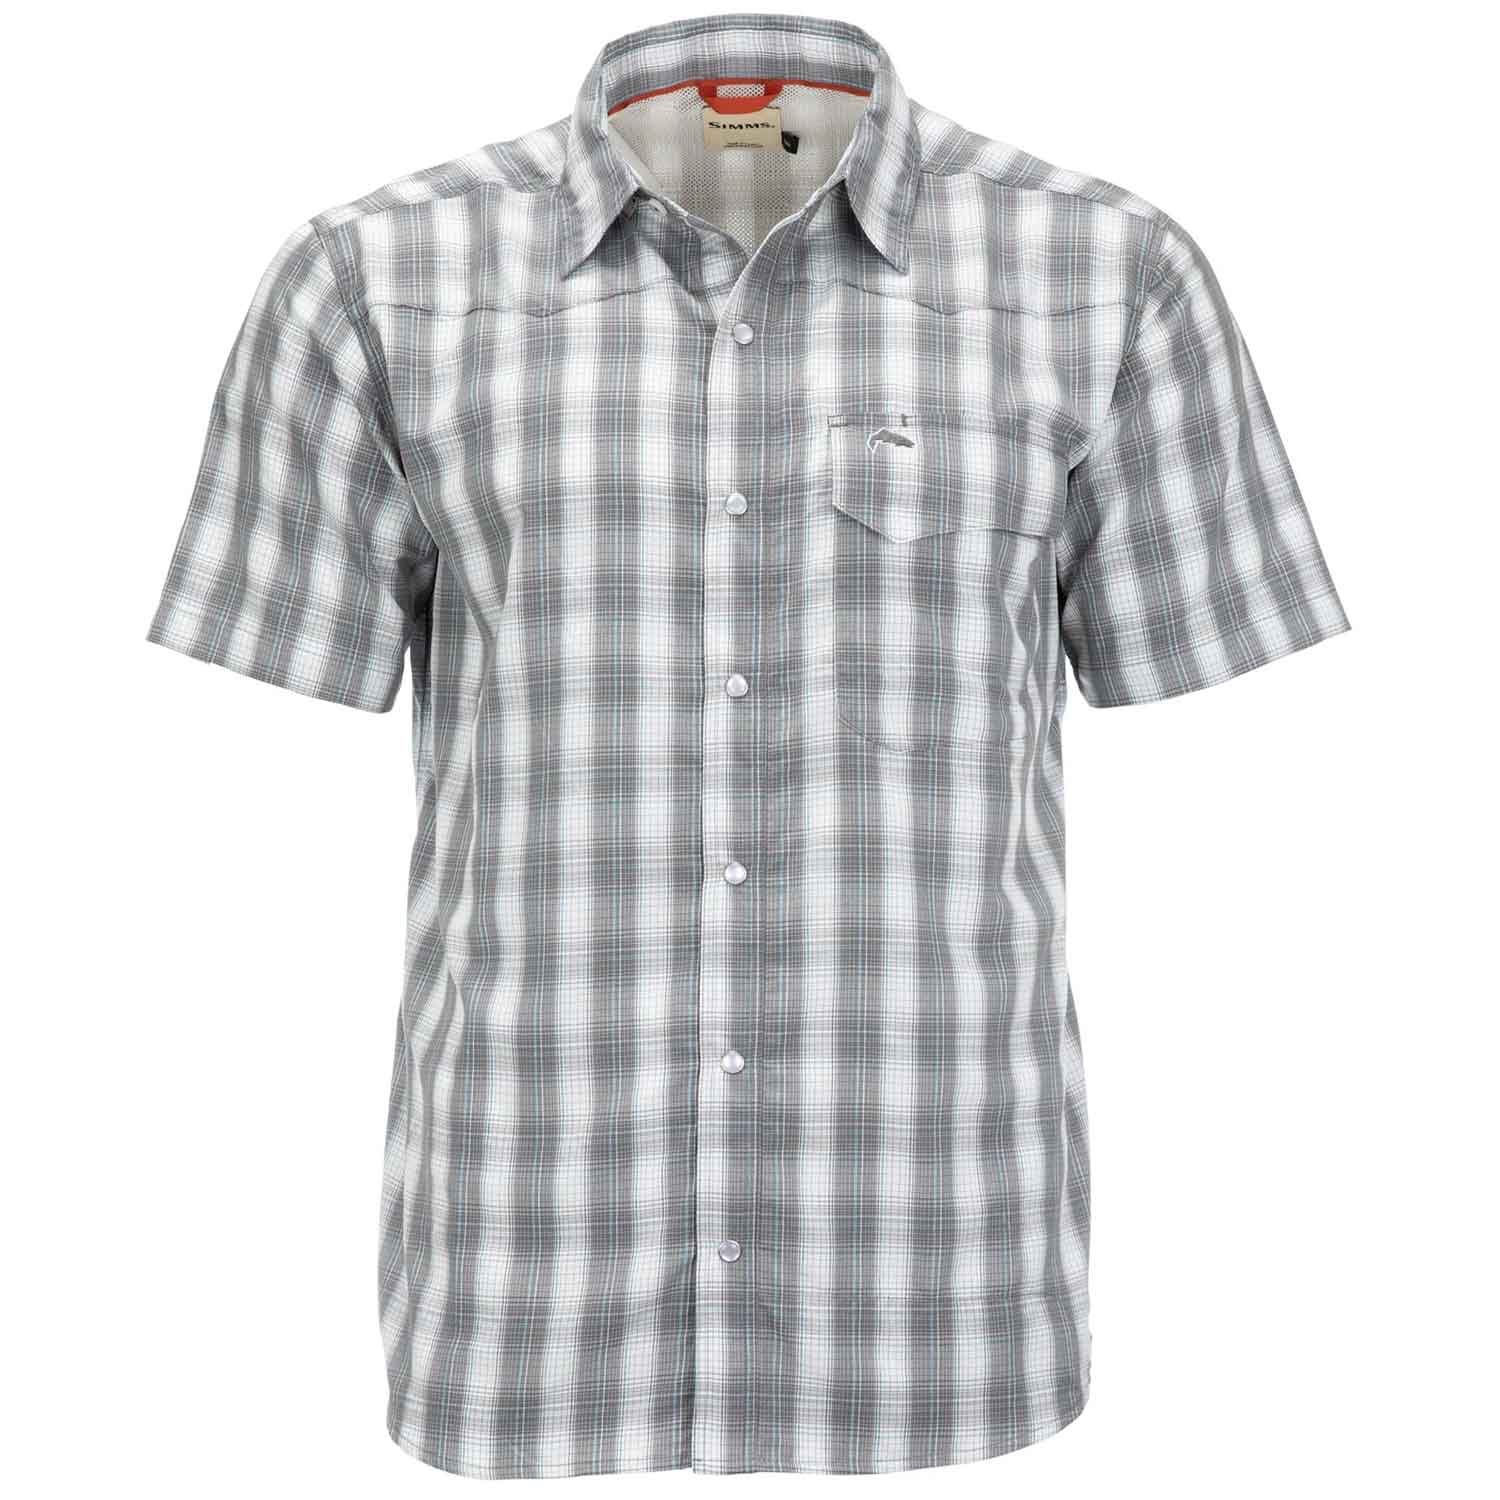 Men's Short Sleeve Button Up Shirts